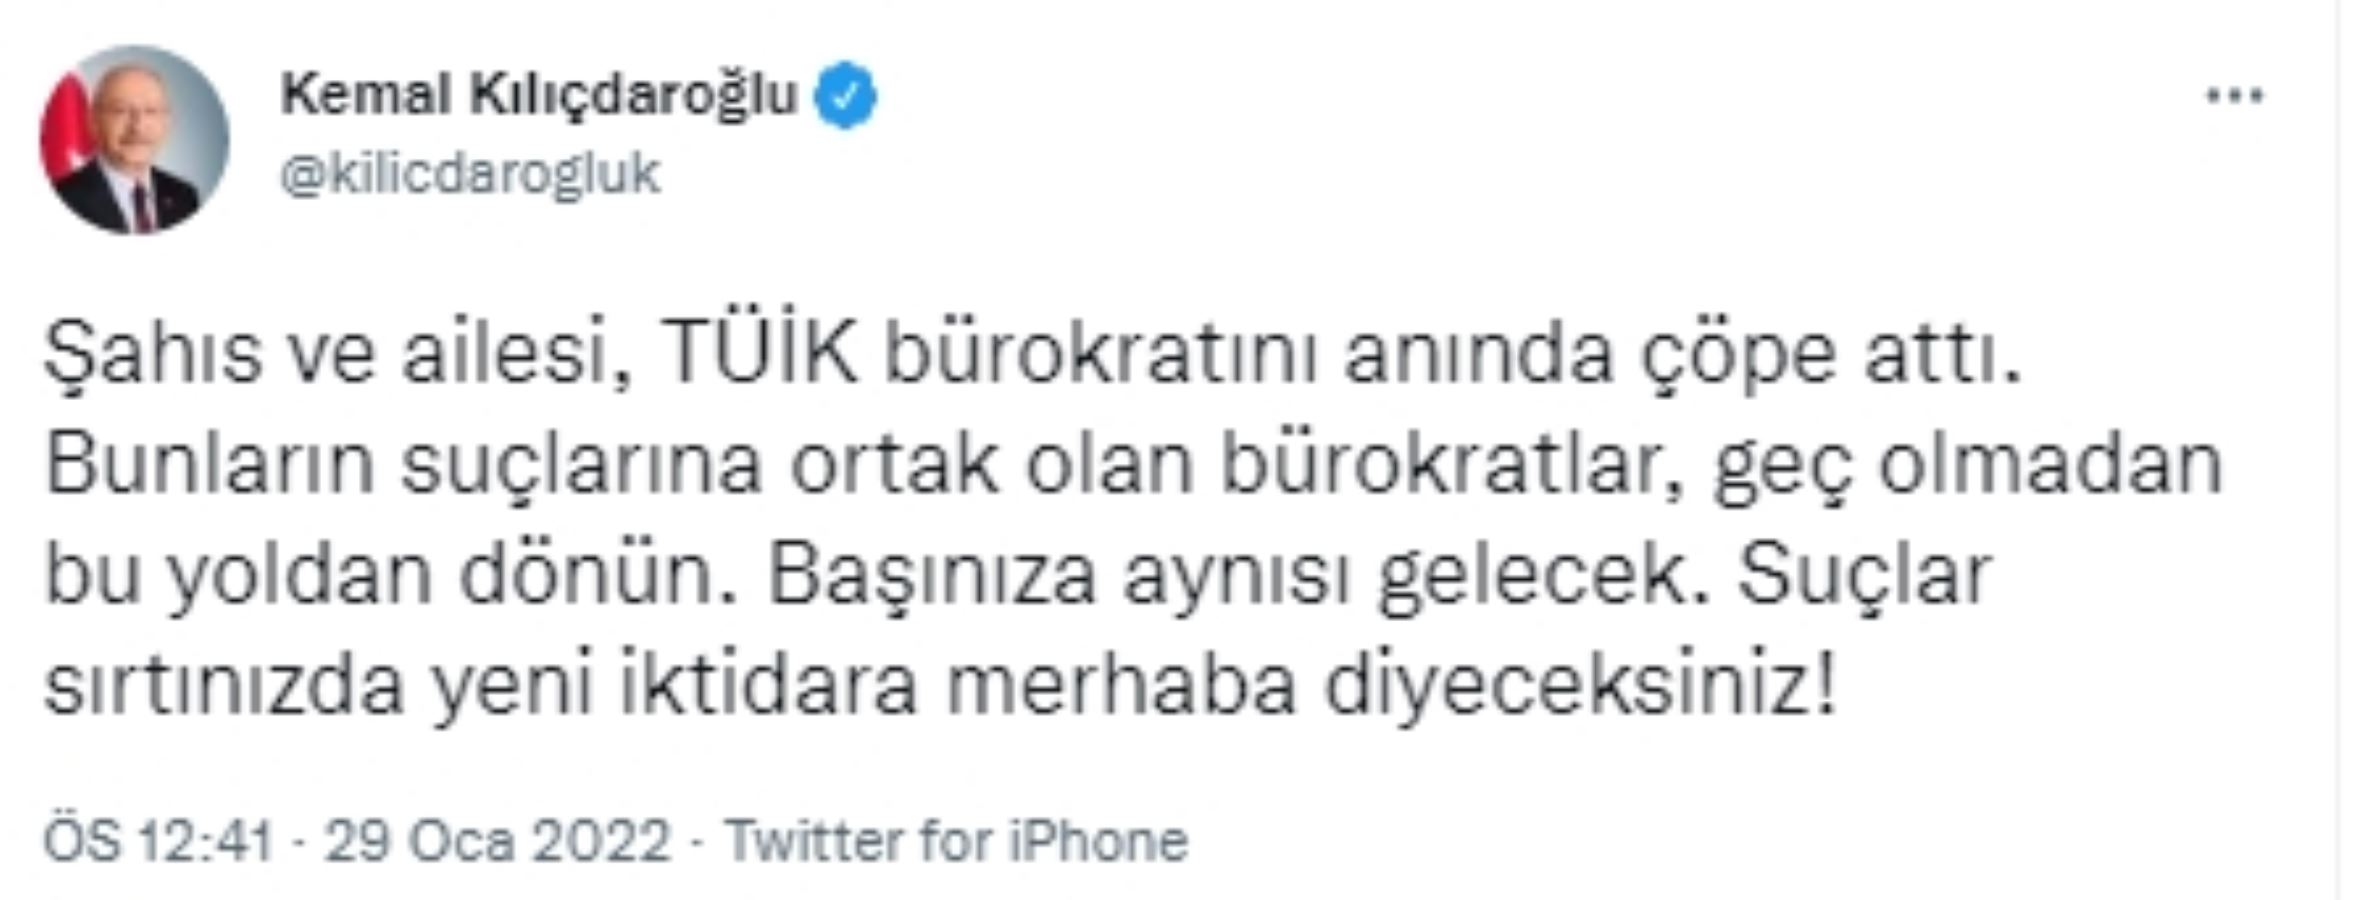 Kılıçdaroğlu'ndan TÜİK mesajı: Başınıza aynısı gelecek